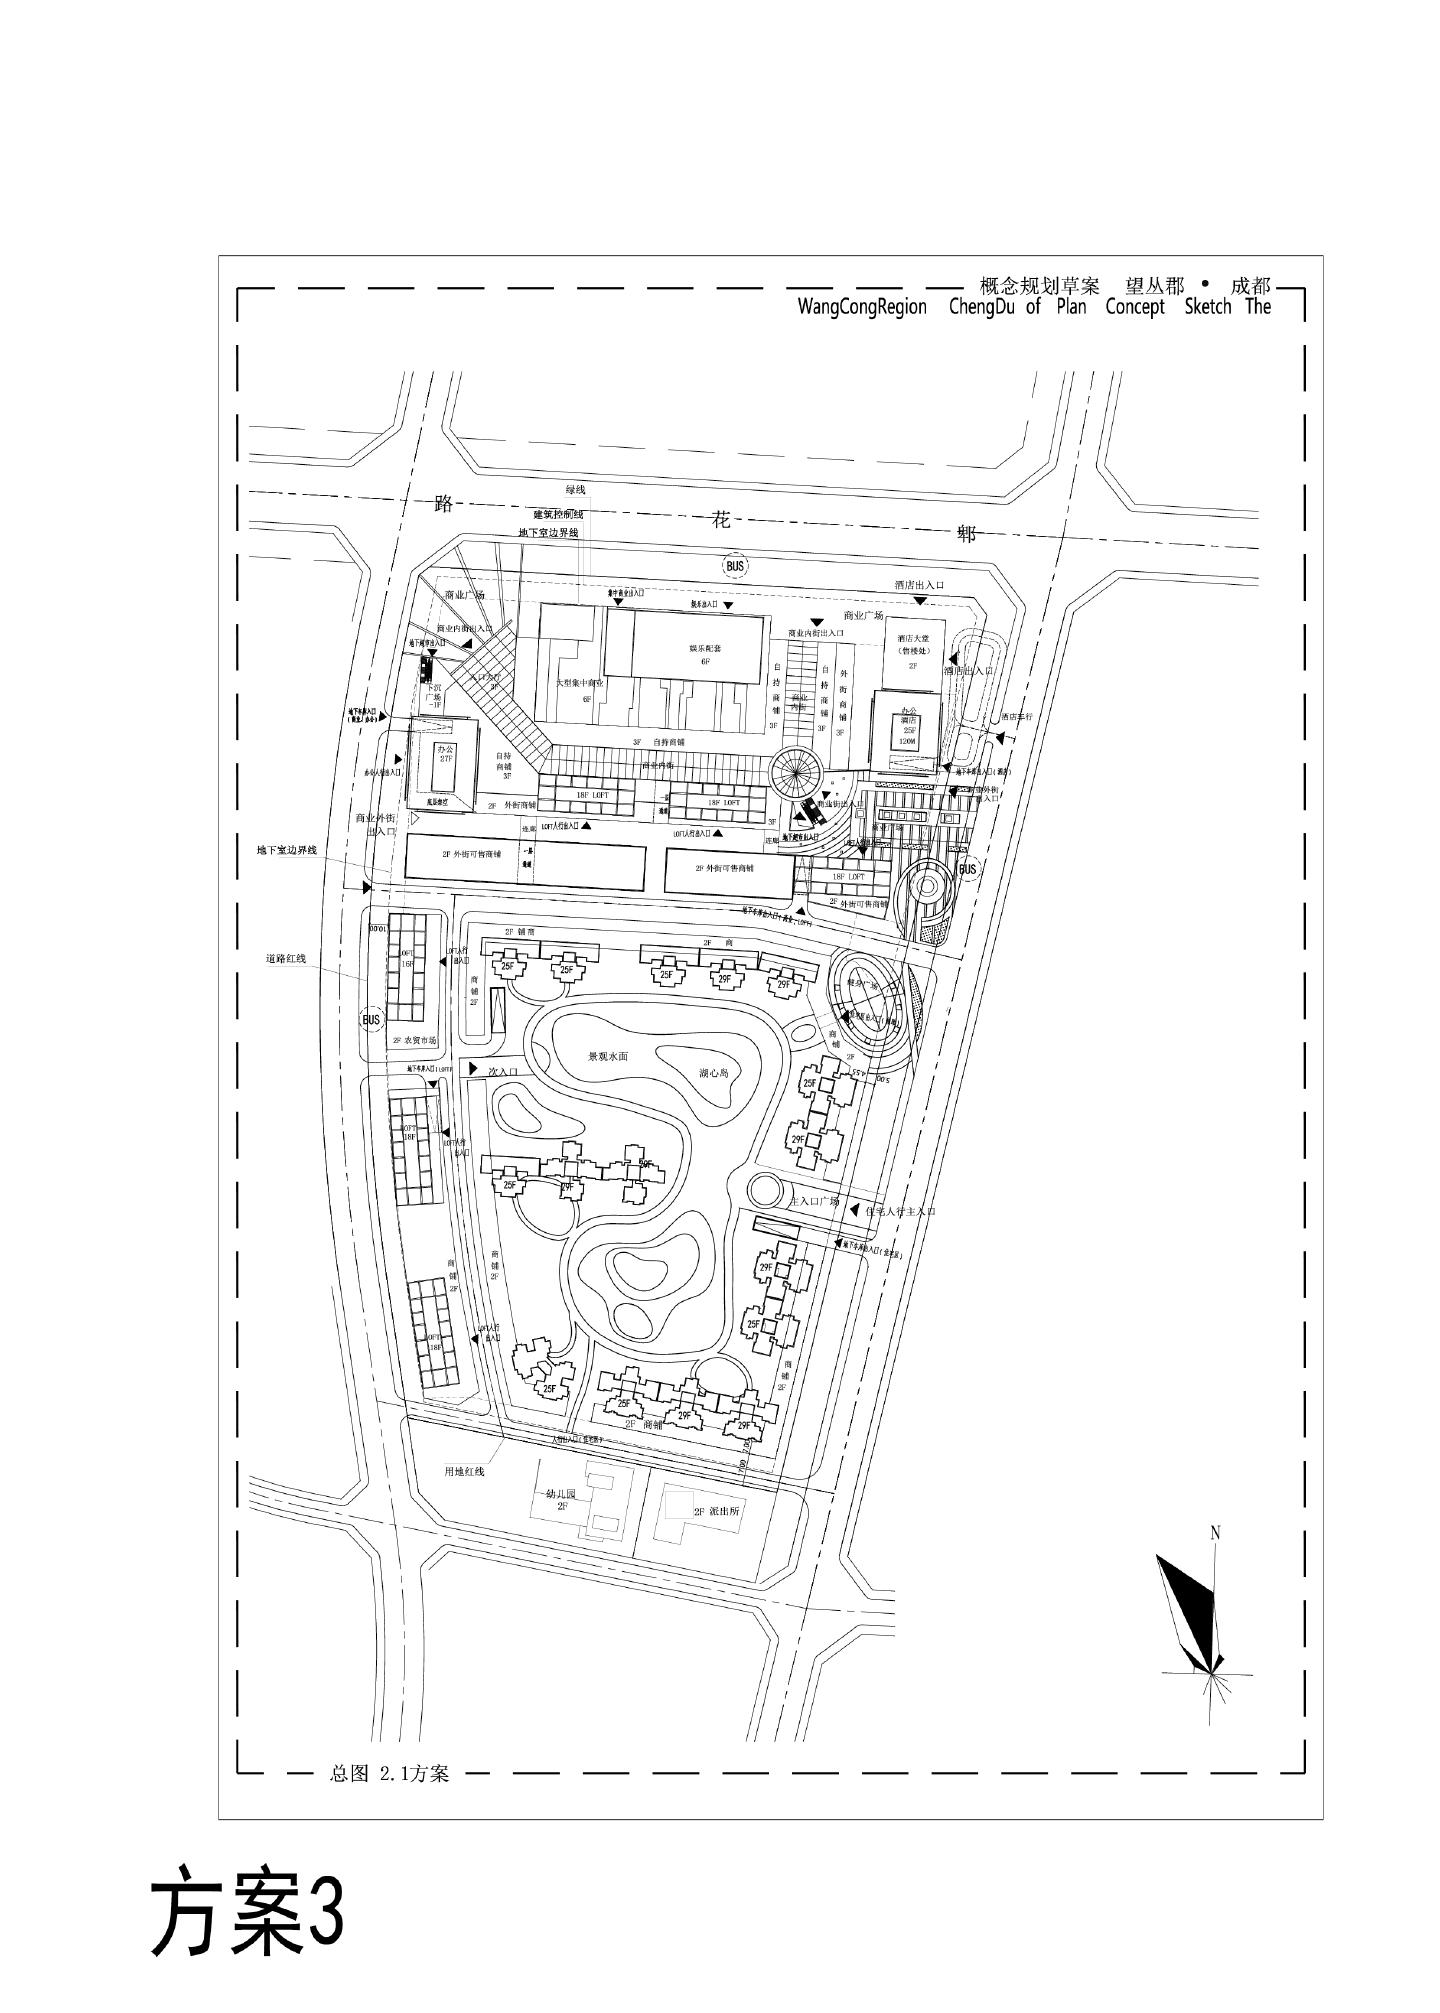 成都·望丛郡概念规划草案1008 花样年方案总图CAD图.dwg